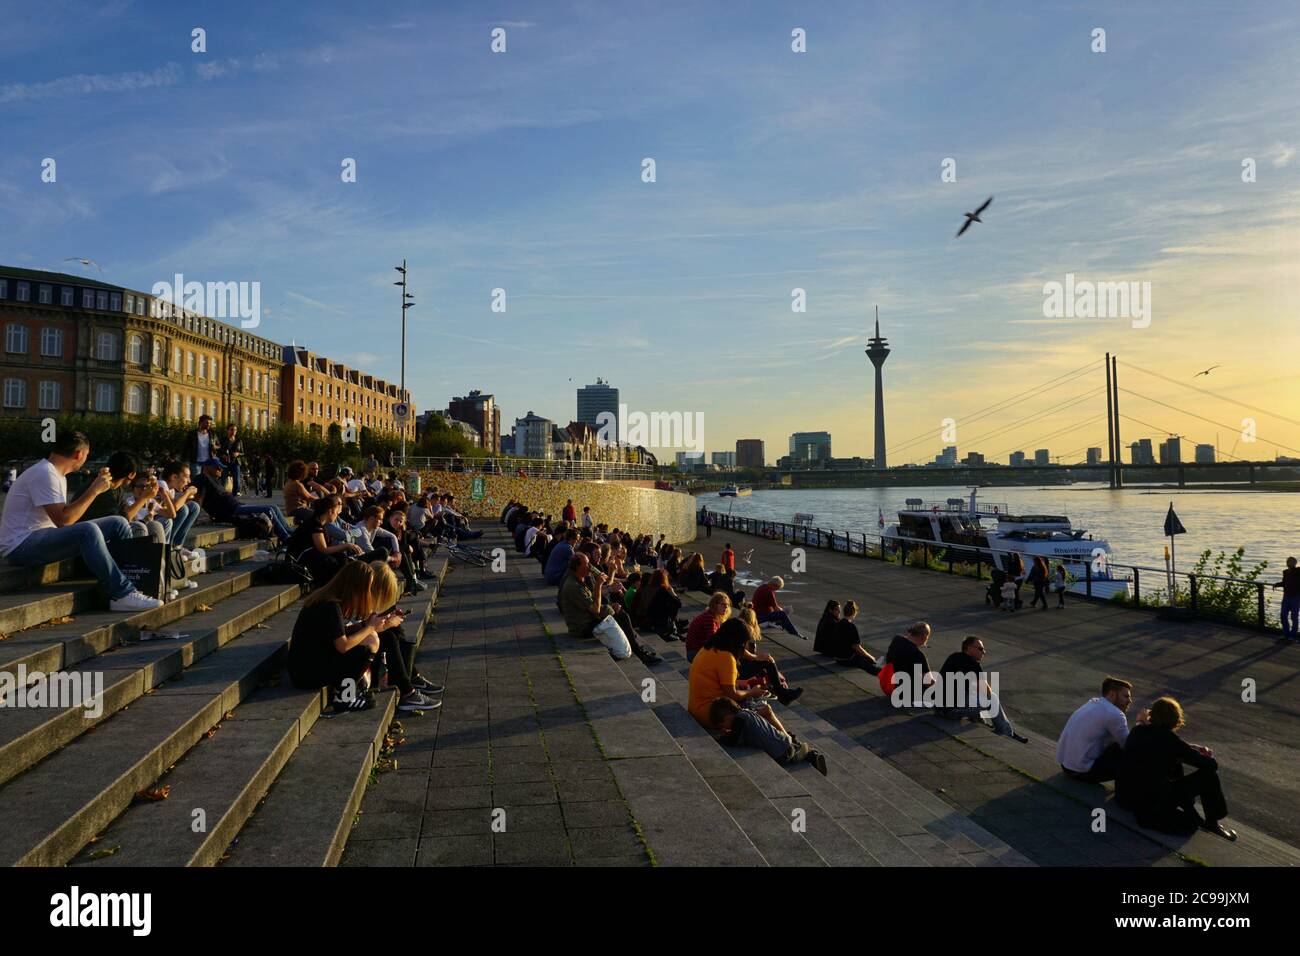 Personnes assises sur les marches de la terrasse du Rhin (Rheintreppe) à Burgplatz, le Rhin, et appréciant le coucher du soleil. Banque D'Images